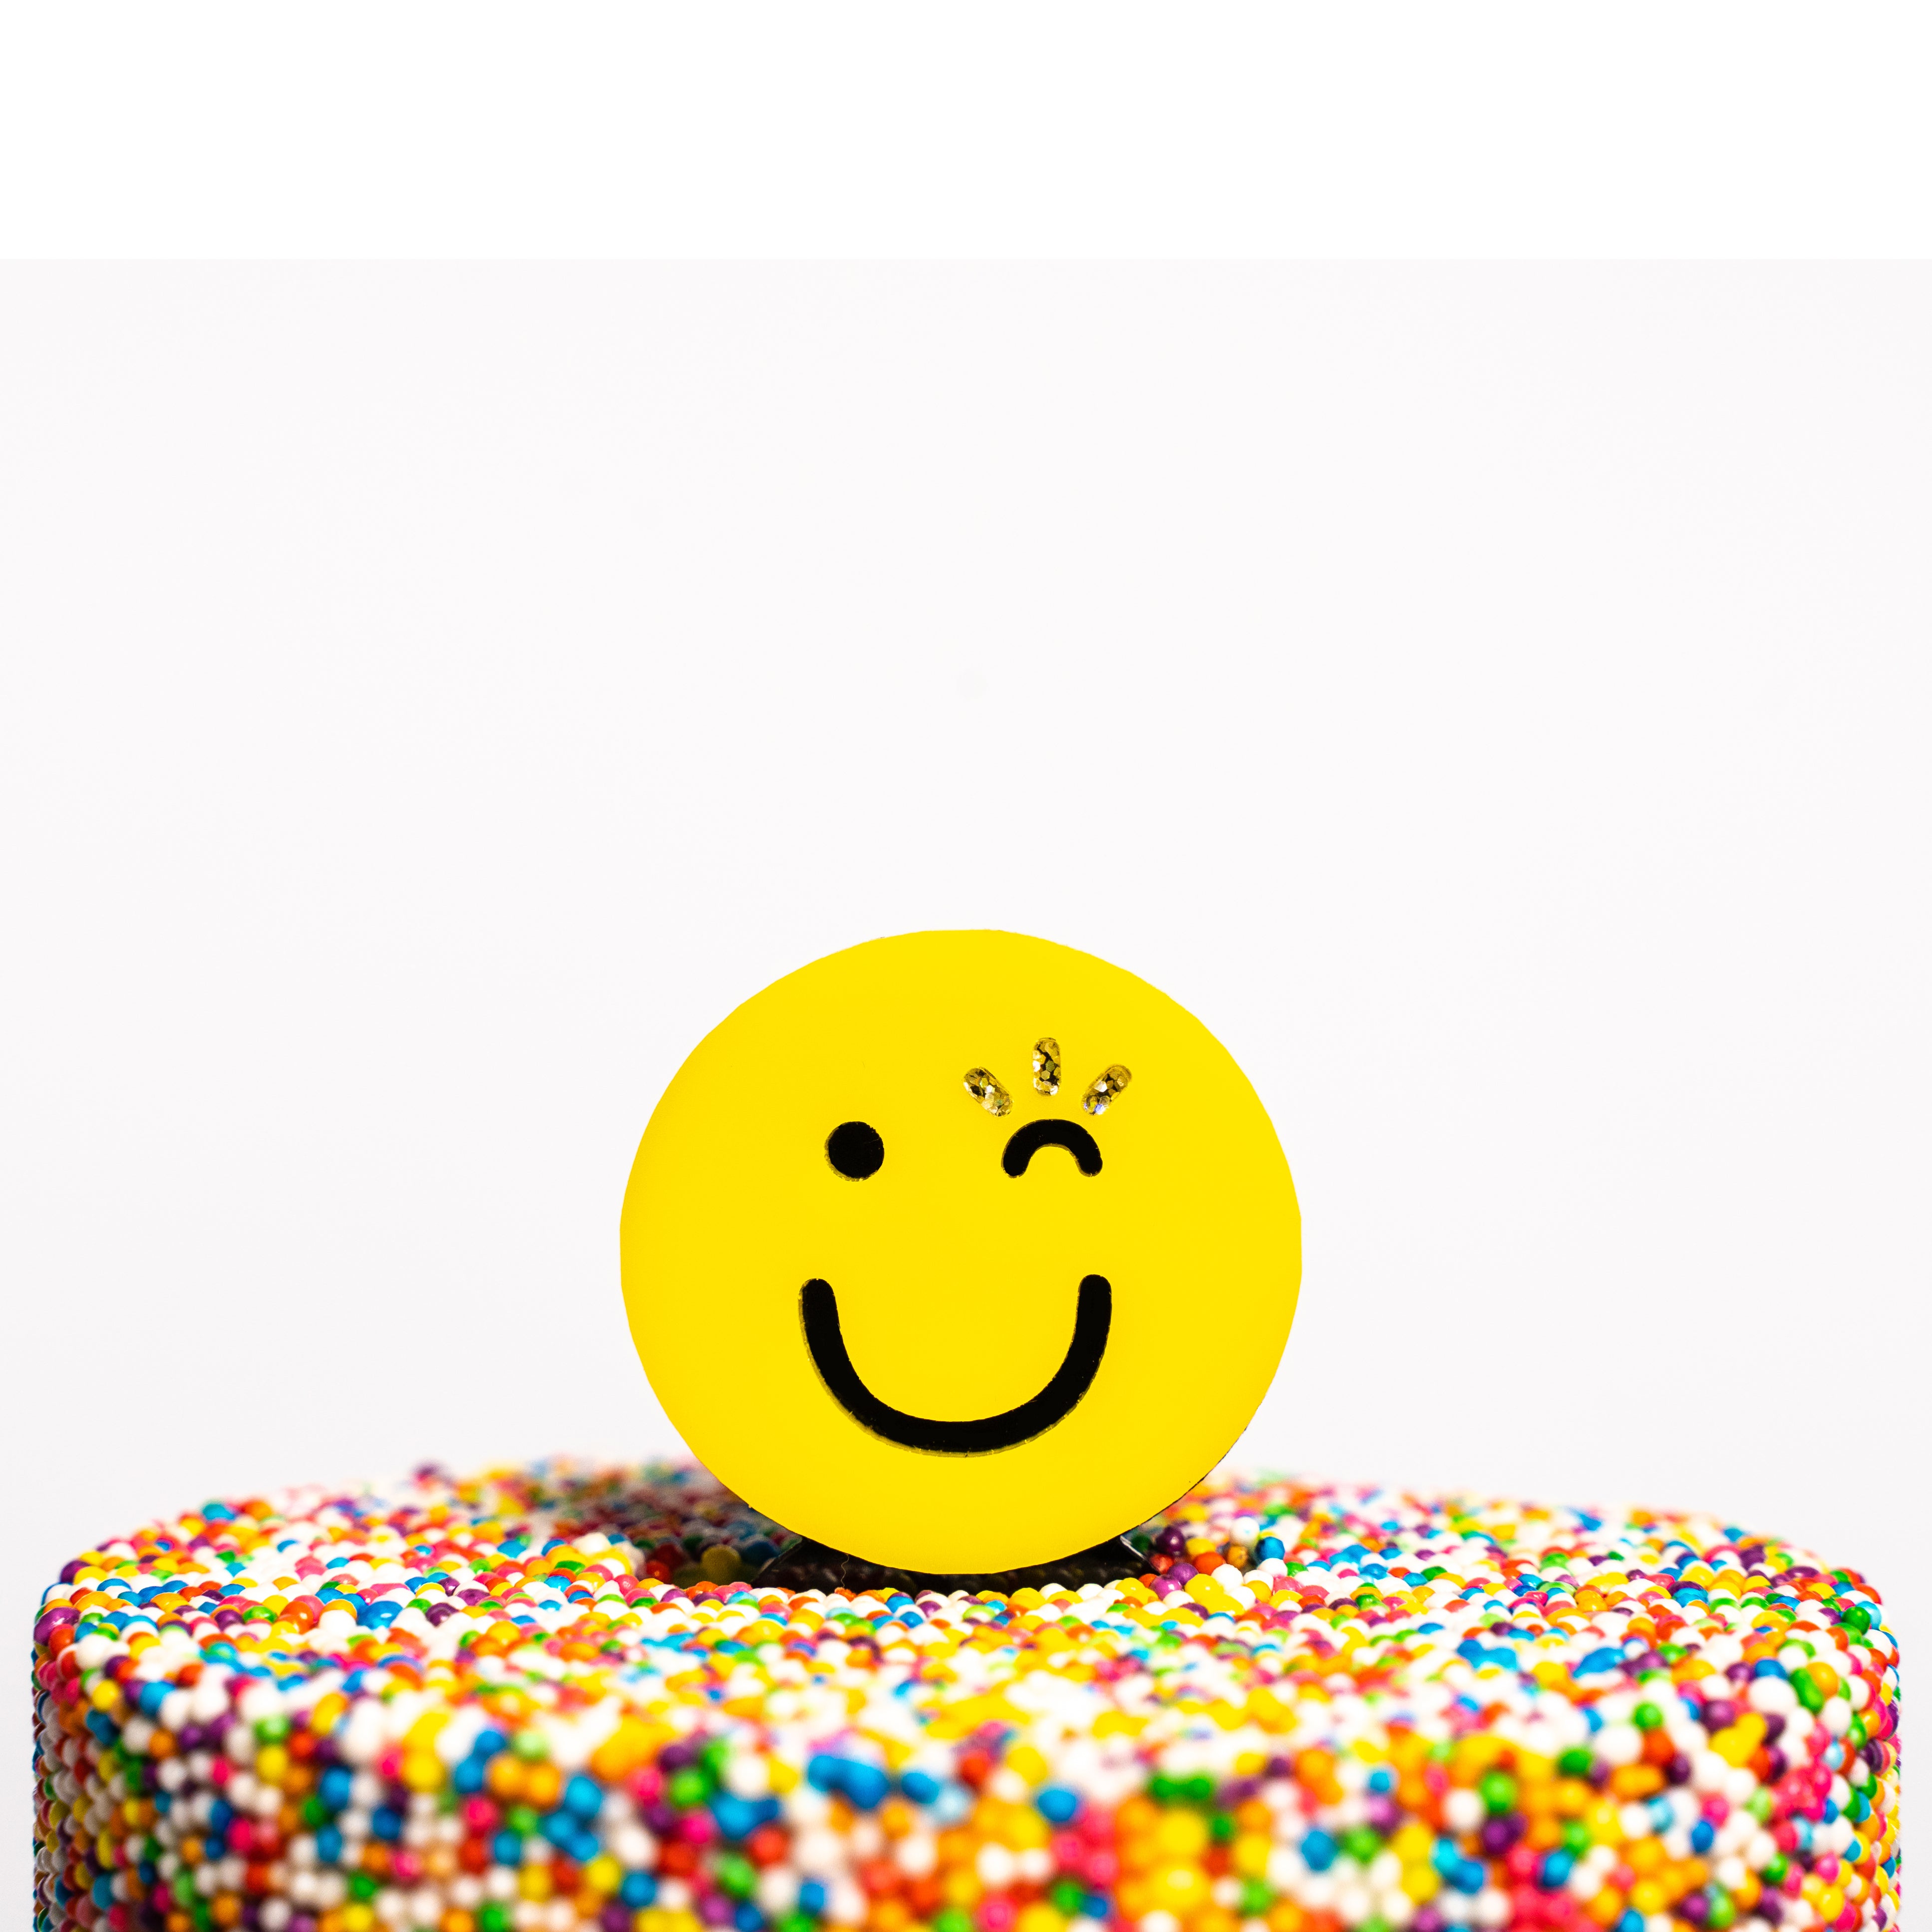 Smiley Face Birthday Cake Image, Party Cake Image Stock Photo - Image of  plush, flower: 201849154